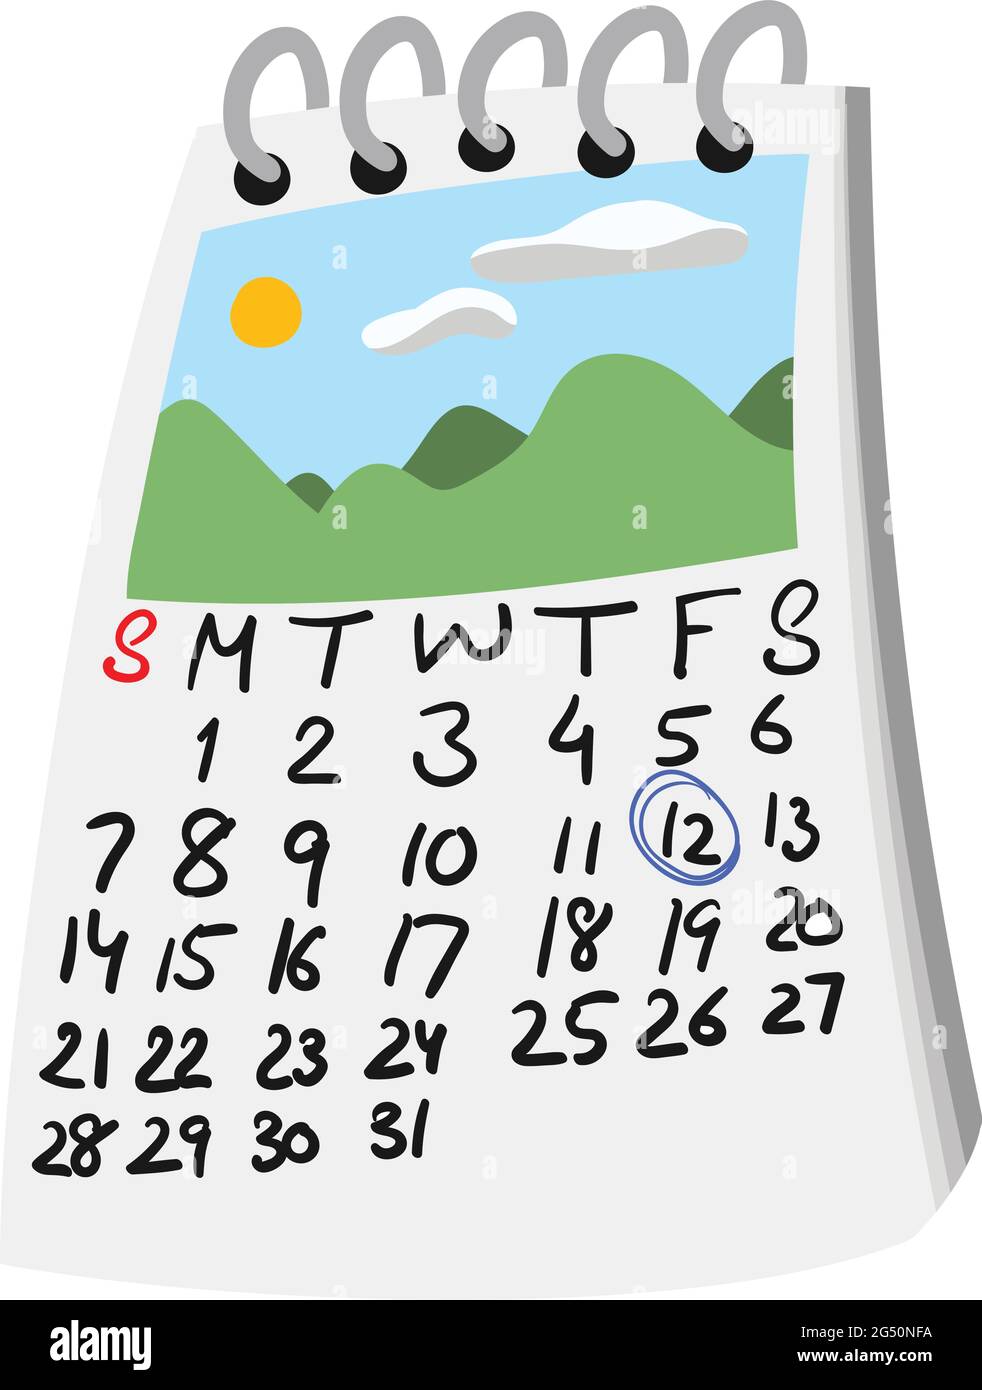 Reise-Kalender im Cartoon-Stil mit eingekreisten Daten und Reisebild oben. Landschaftsbild mit Hügeln und Himmel und Sonne. Isolierter Vektor-Clipart. Stock Vektor